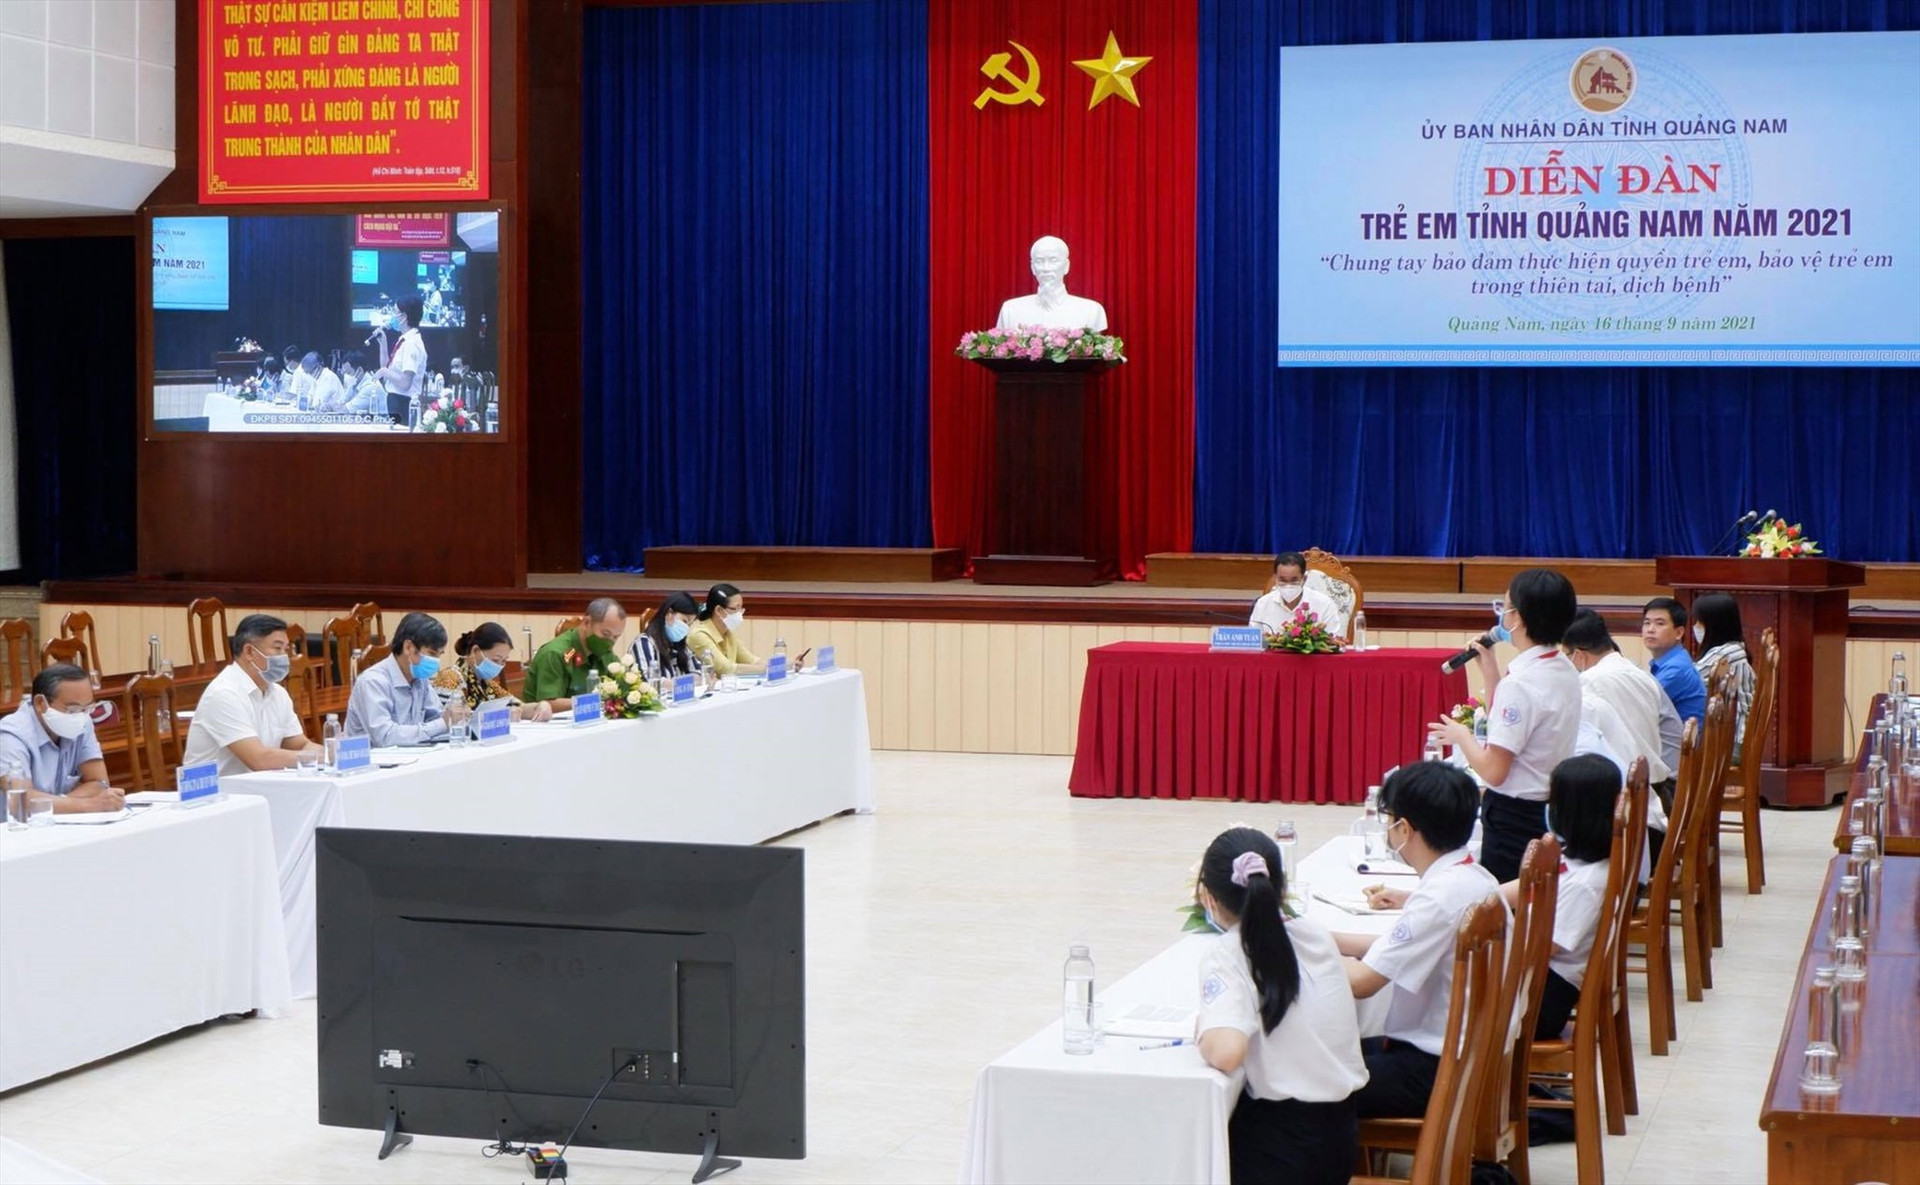 Diễn đàn Trẻ em Quảng Nam năm 2021 ghi nhận nhiều khuyến nghị của trẻ em.